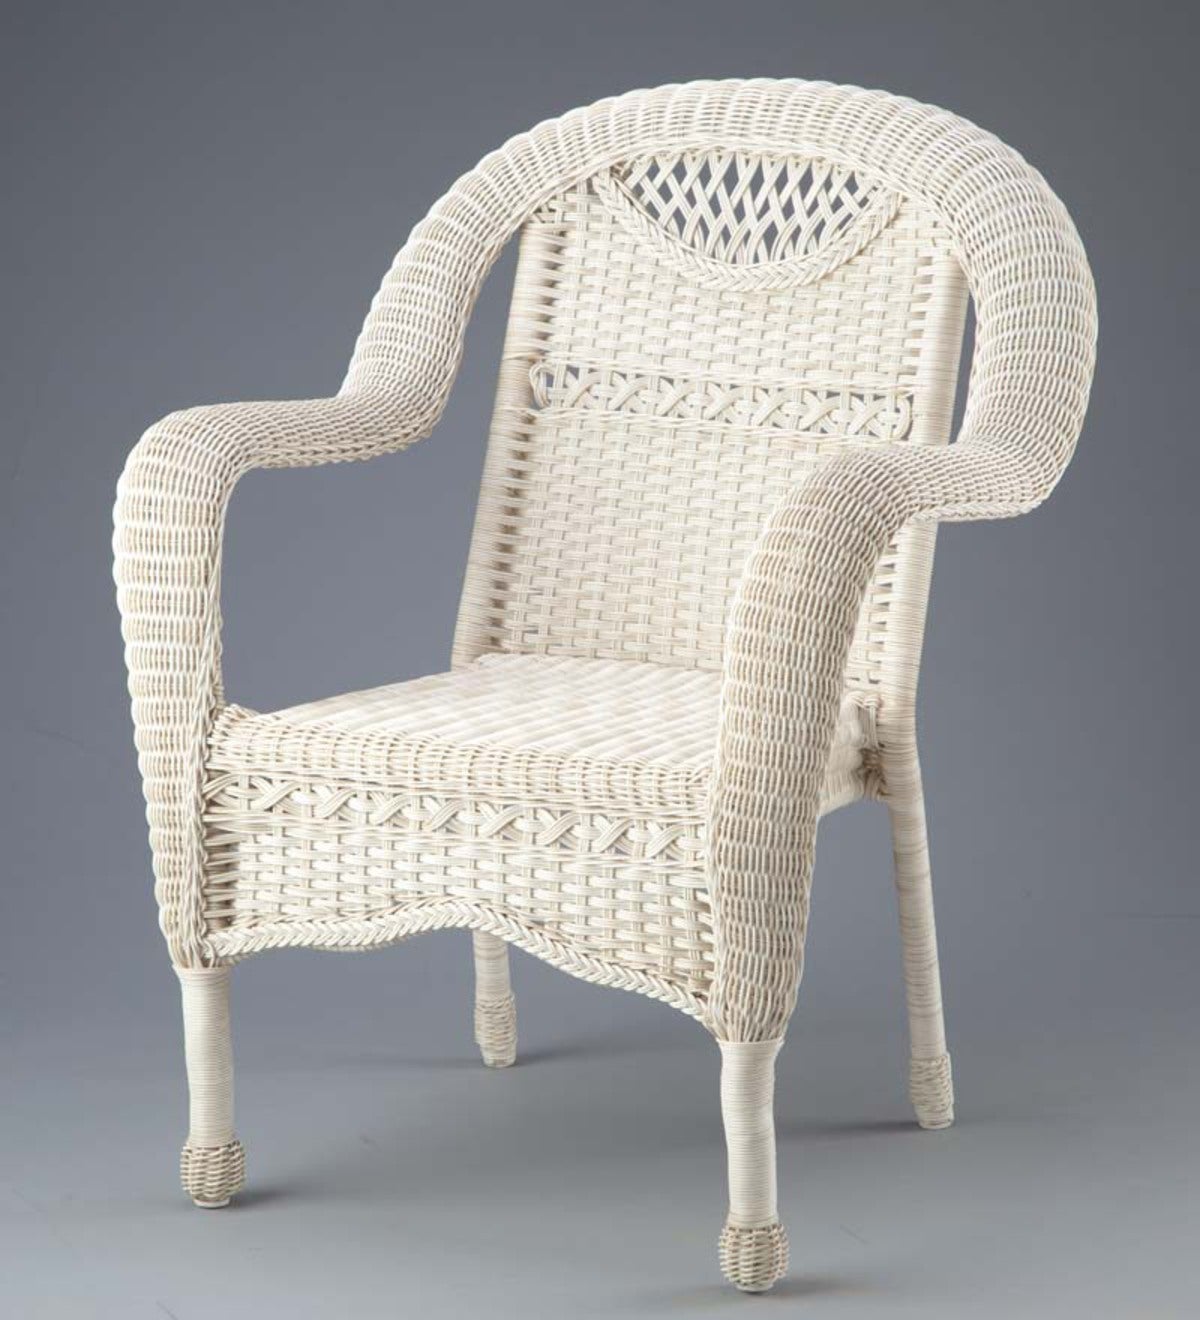 Outdoor Wicker Chair - Outdoor Wicker Stackable Chairs, Set of 2, Grey